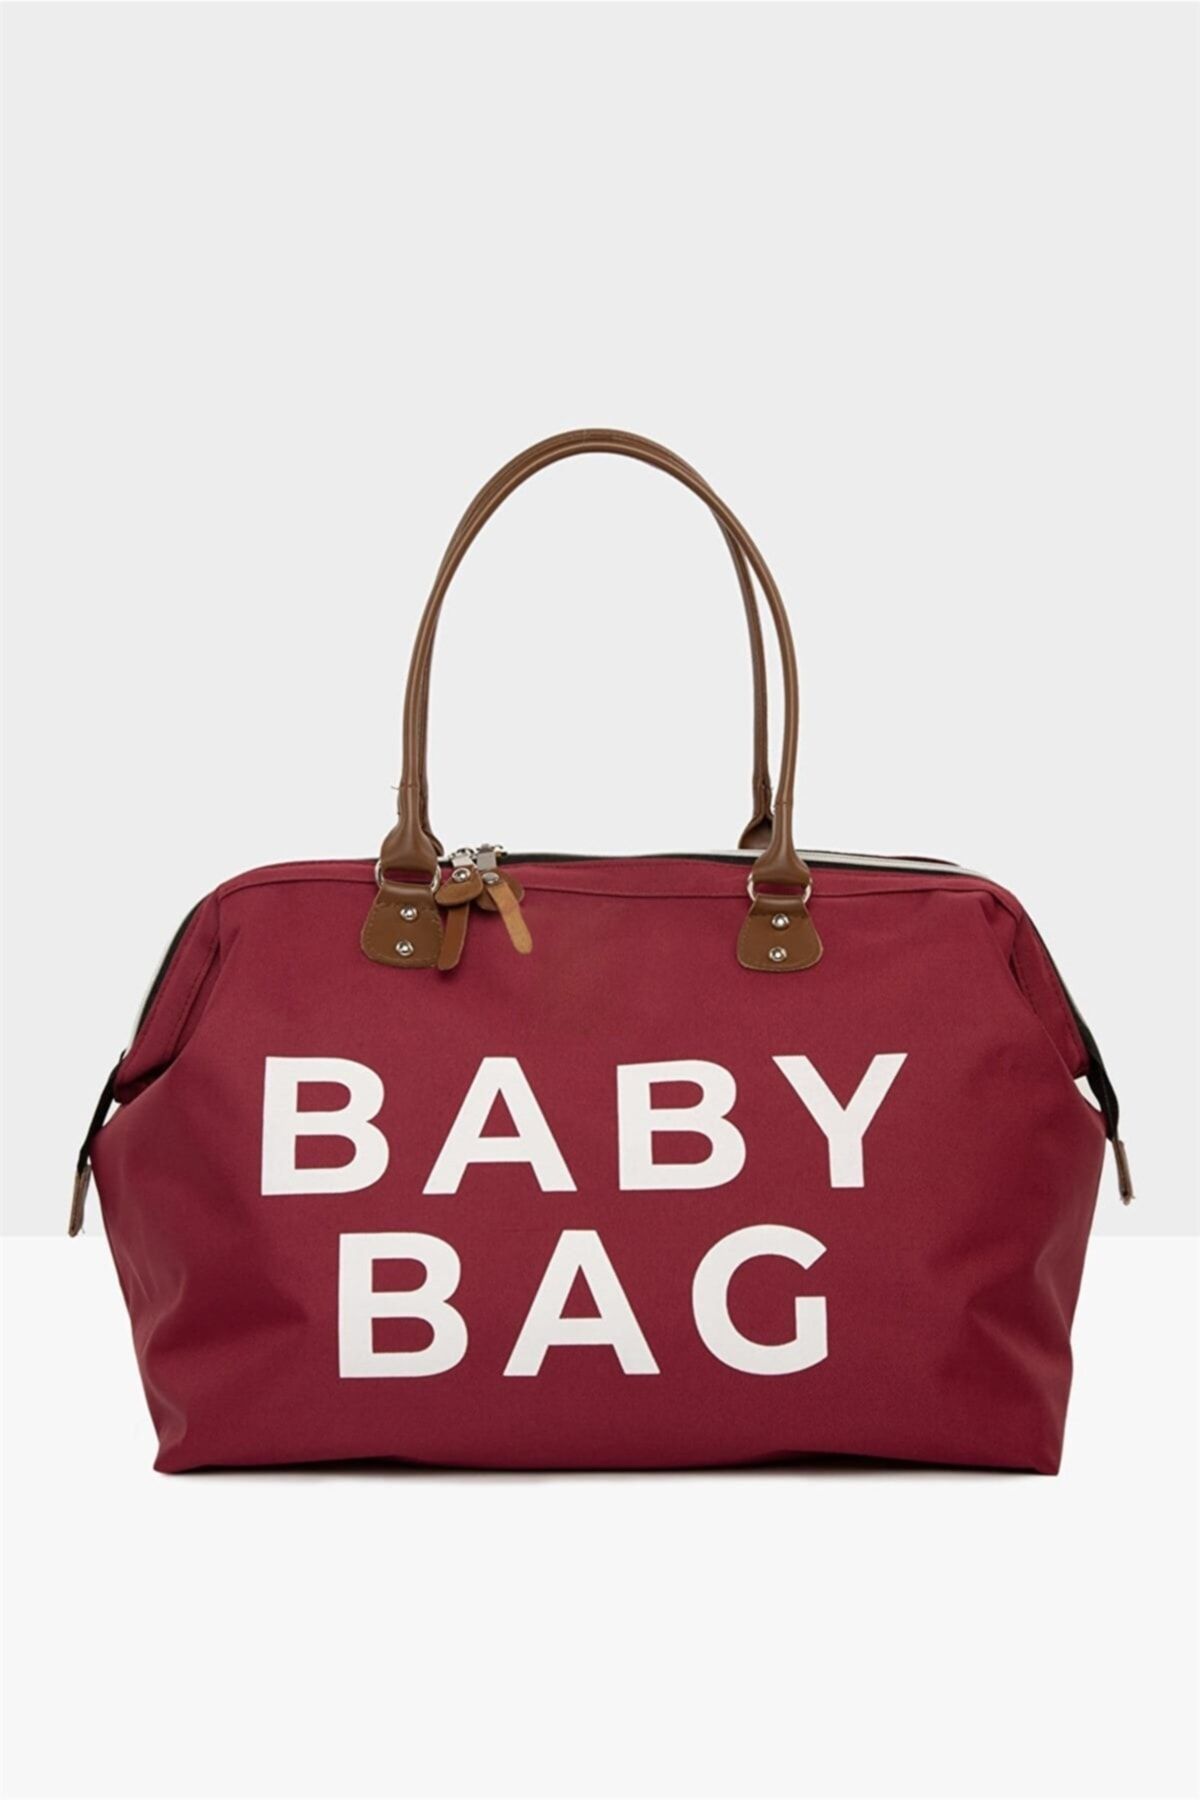 Bagmori Bordo Baby Bag Baskılı Bebek Bakım Çantası M000002170